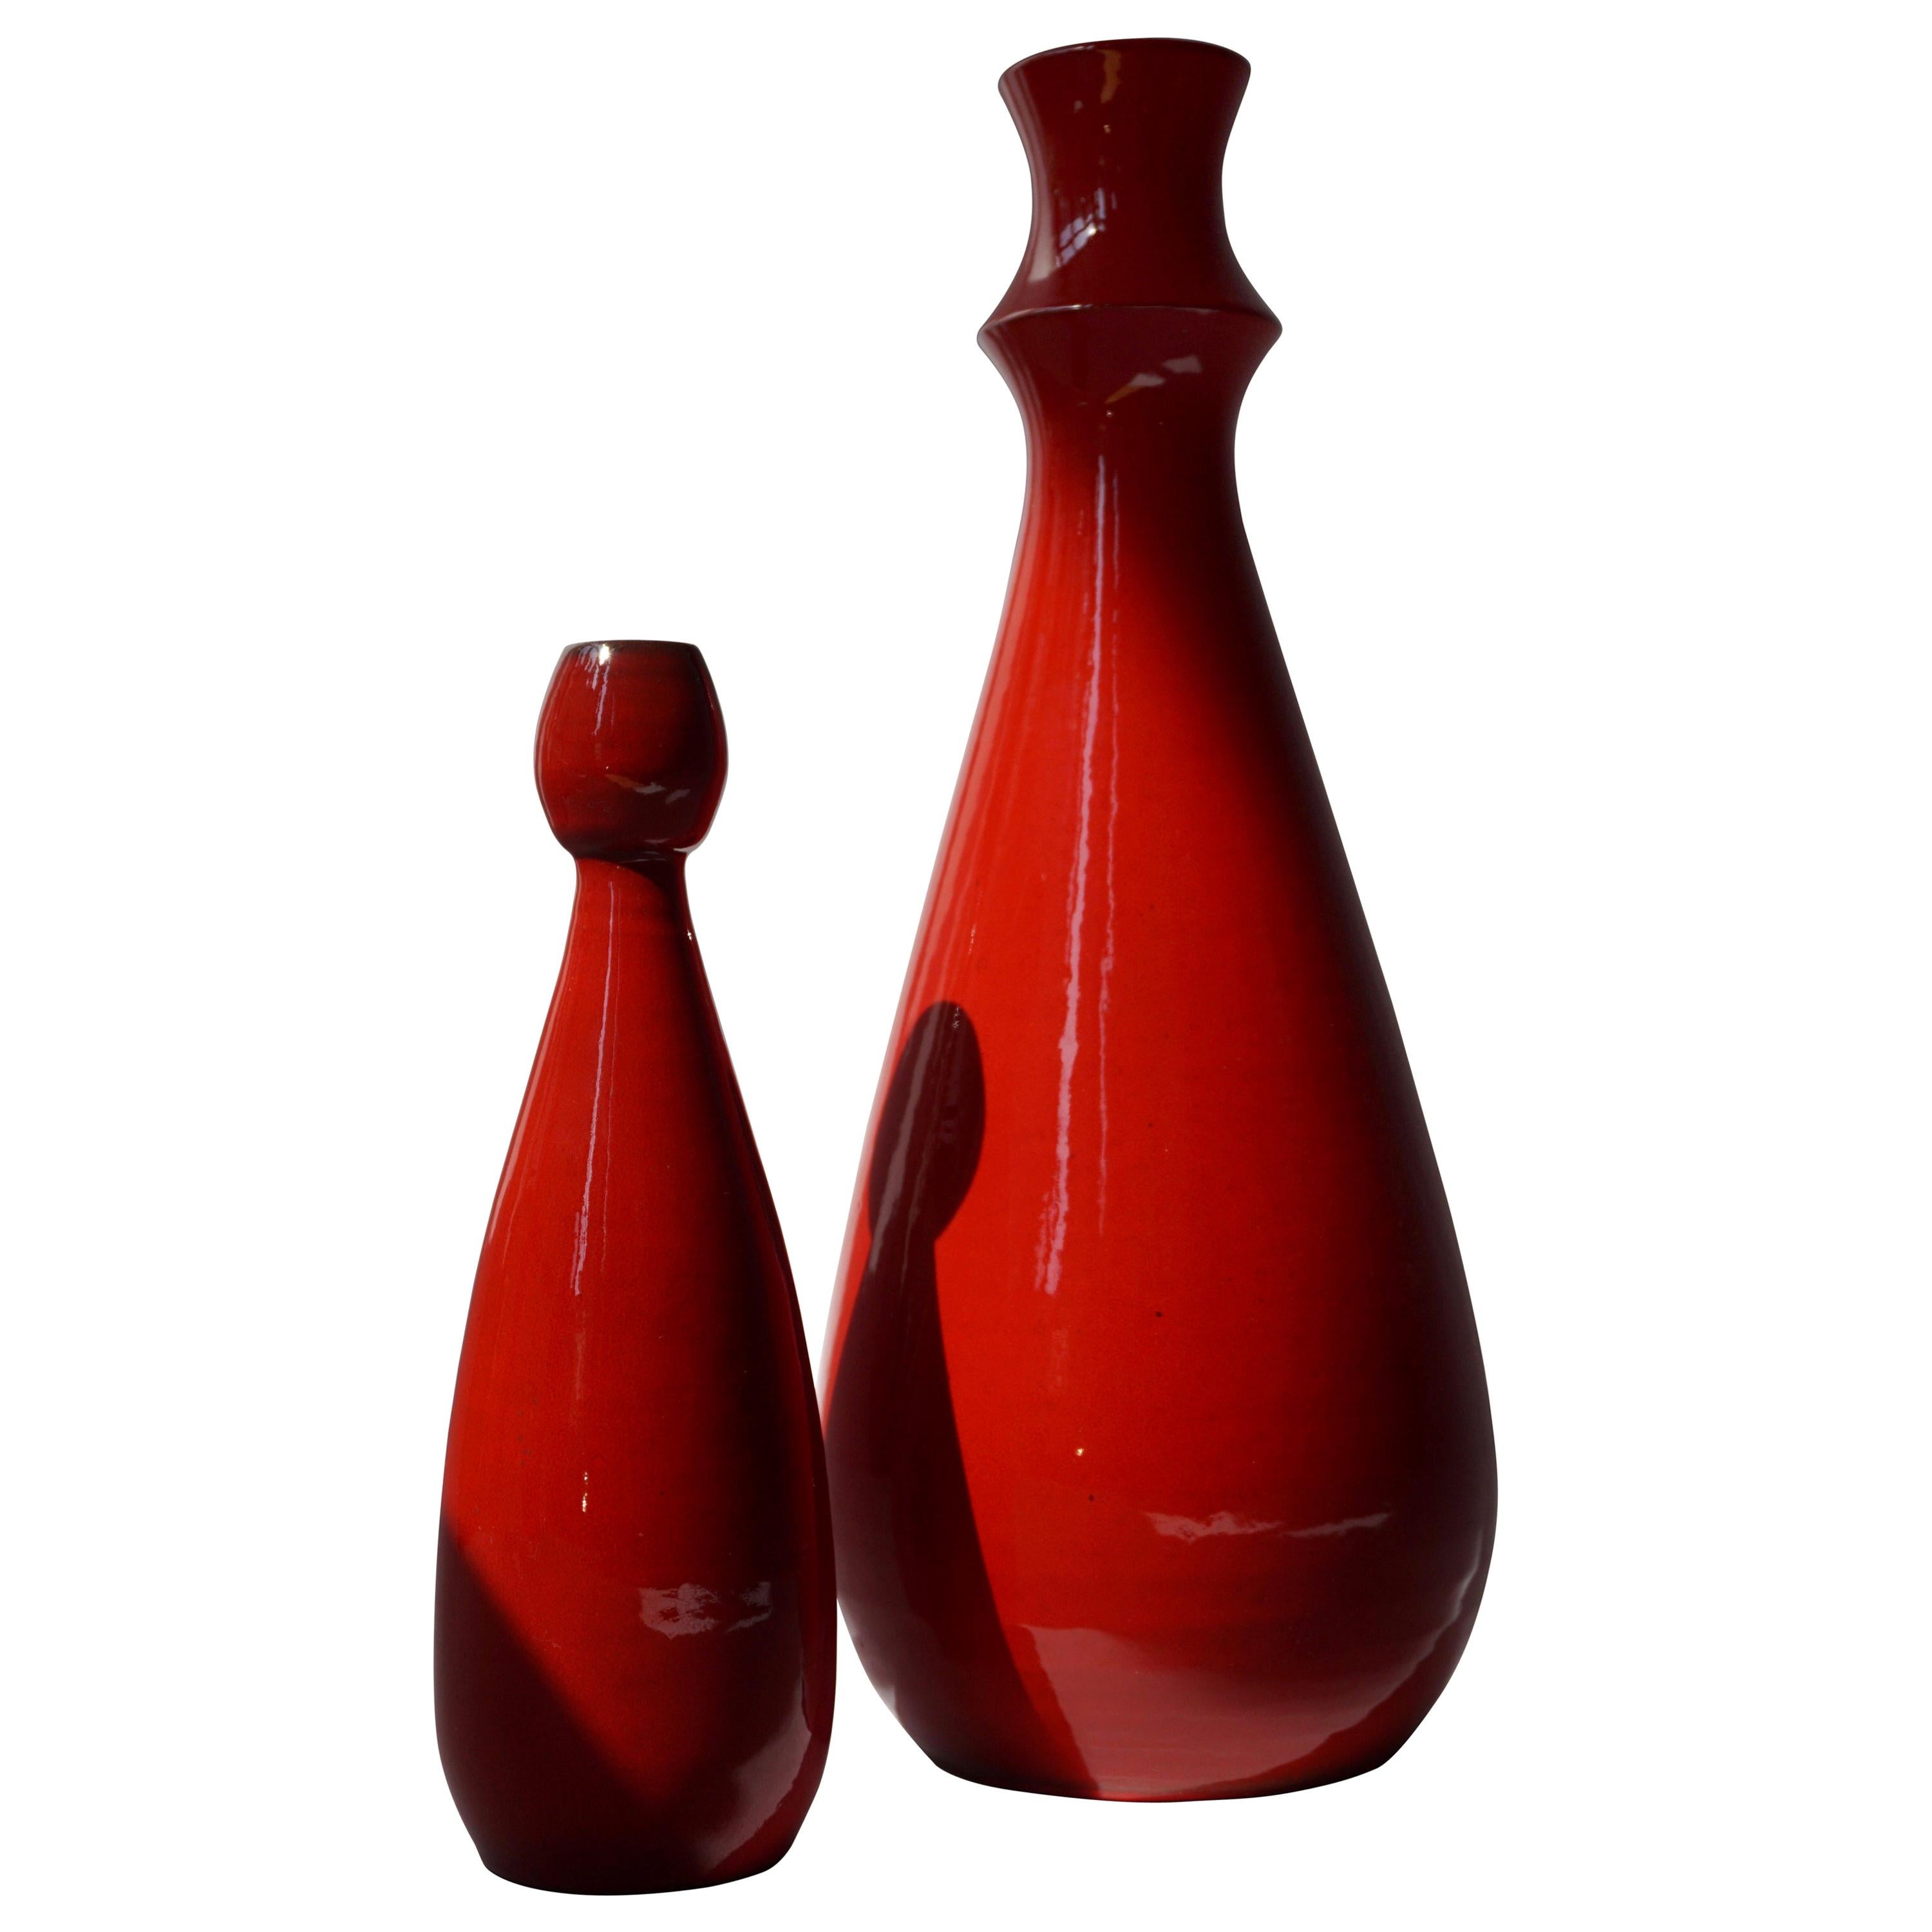 Two Italian Red Ceramic Vases